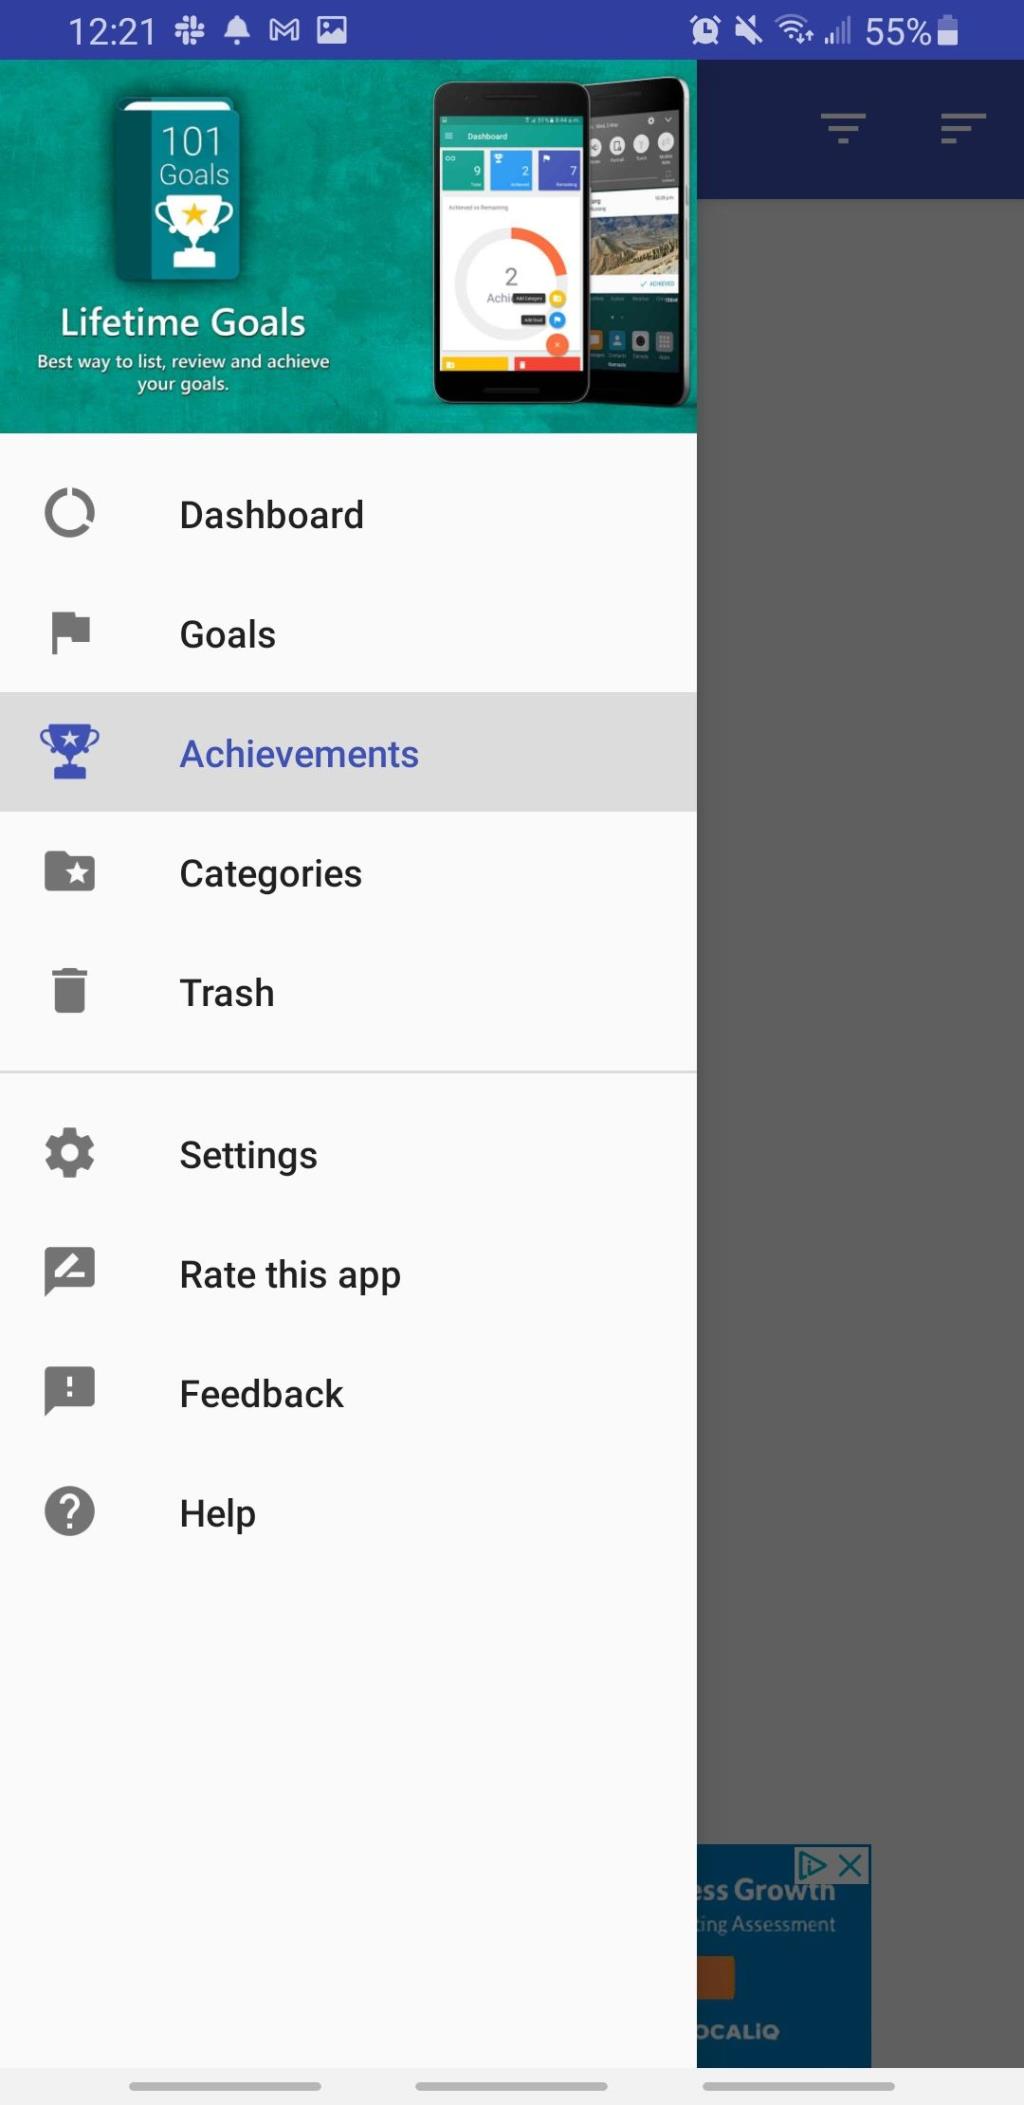 Les 5 meilleures applications de liste de seau pour Android pour atteindre vos objectifs